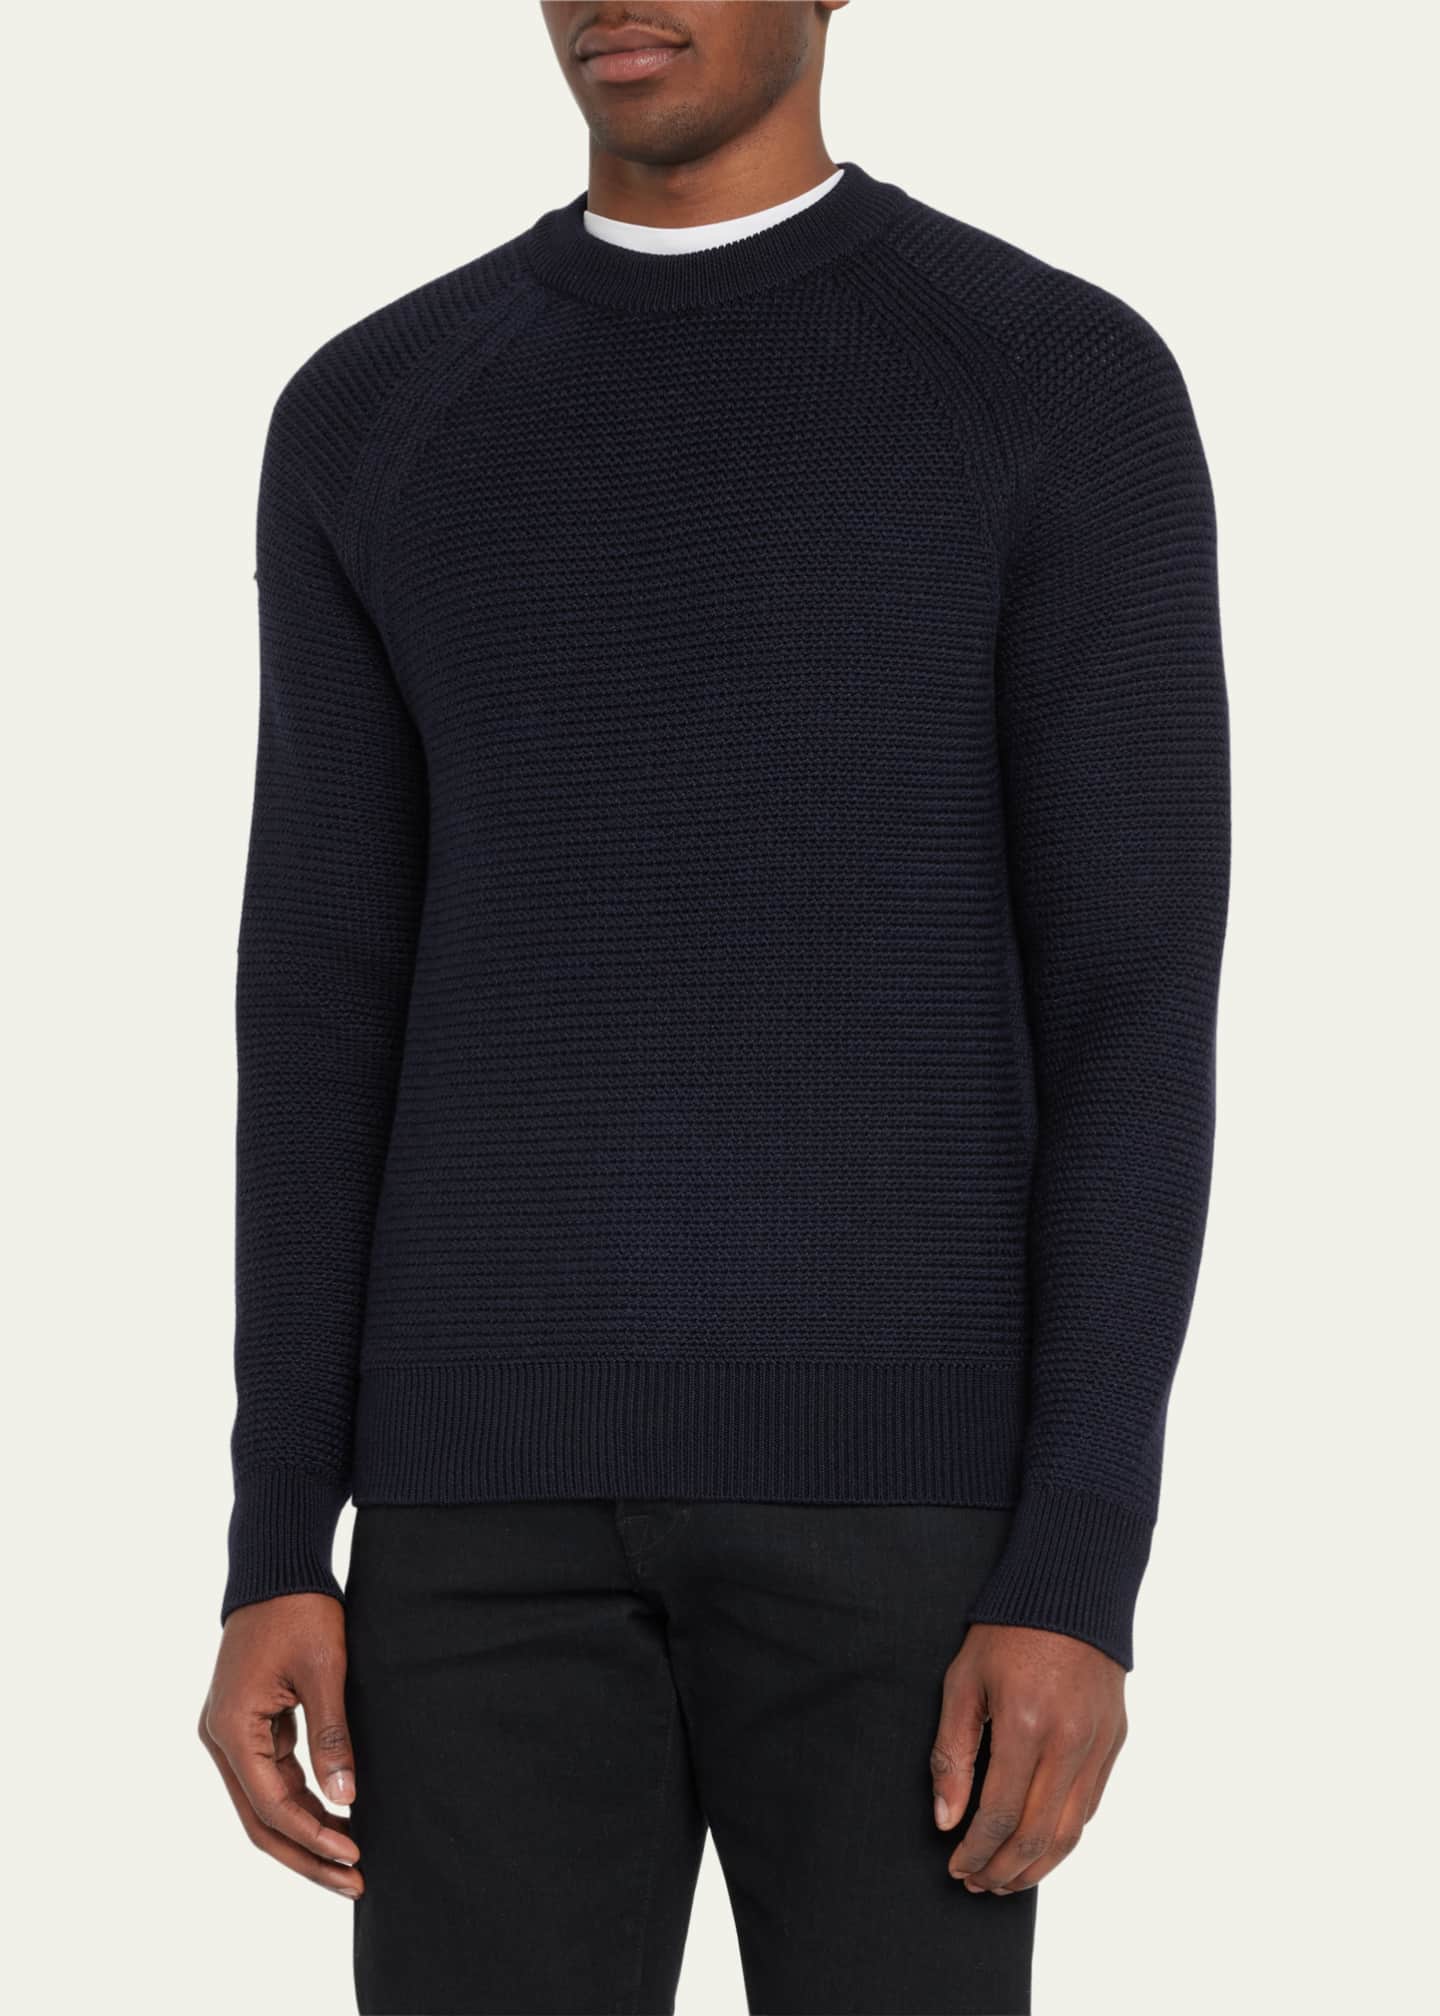 TOM FORD Men's Wool-Silk Knit Crewneck Sweater - Bergdorf Goodman